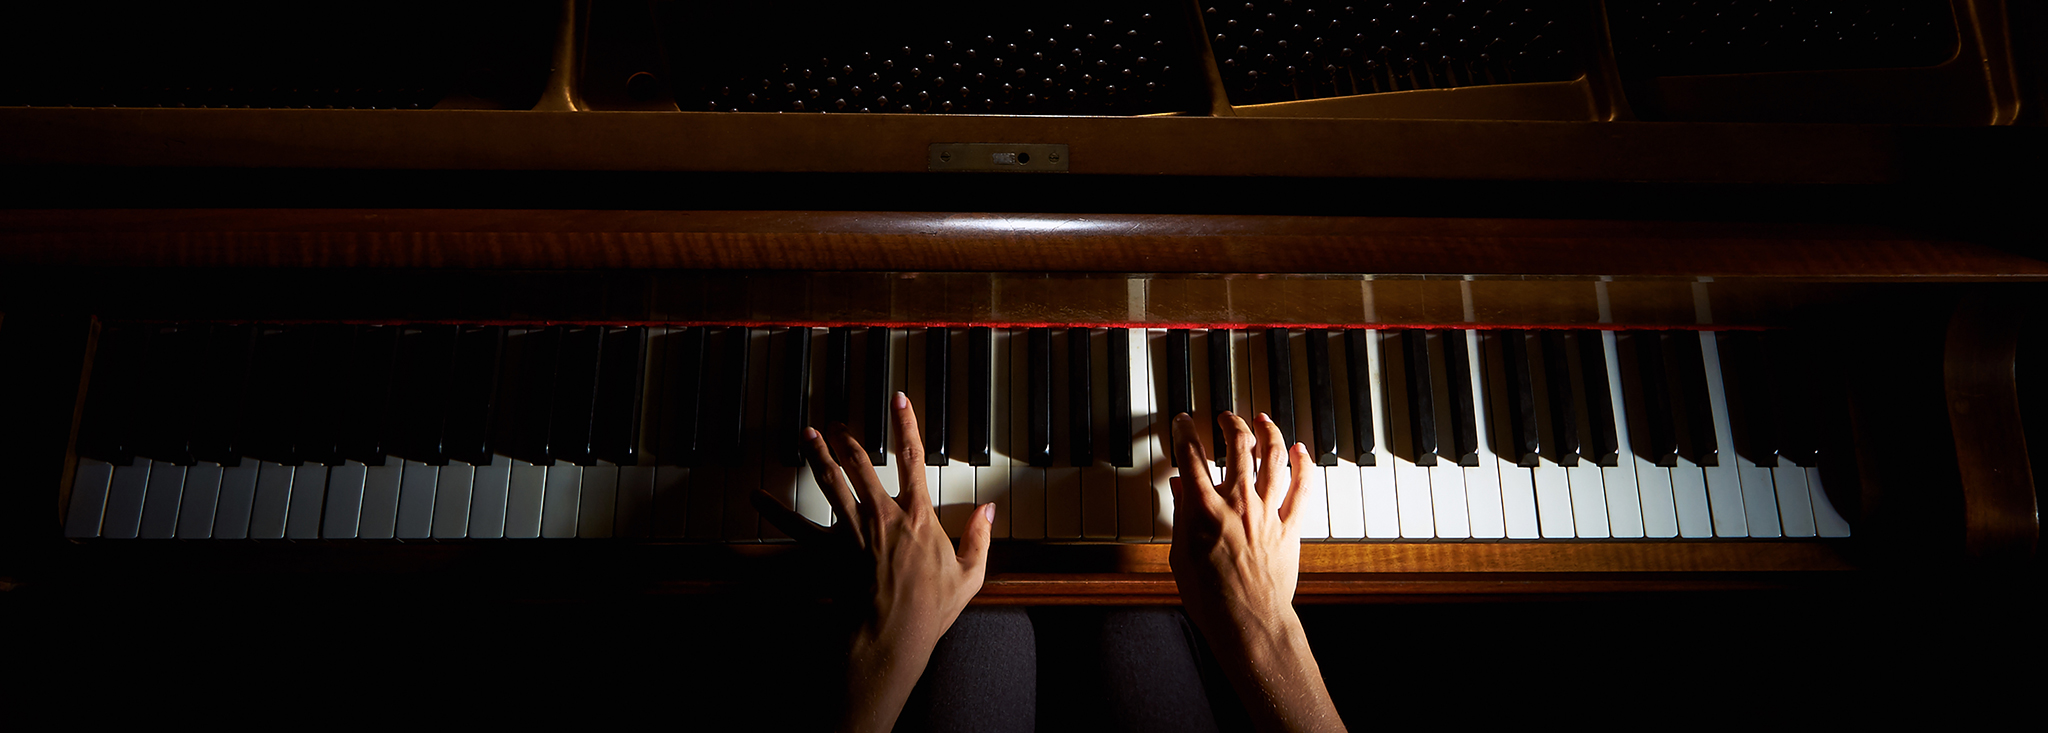 Игры пианино руками. Руки на фортепиано. Женские руки на рояле. Руки пианиста. Длинные пальцы пианиста.